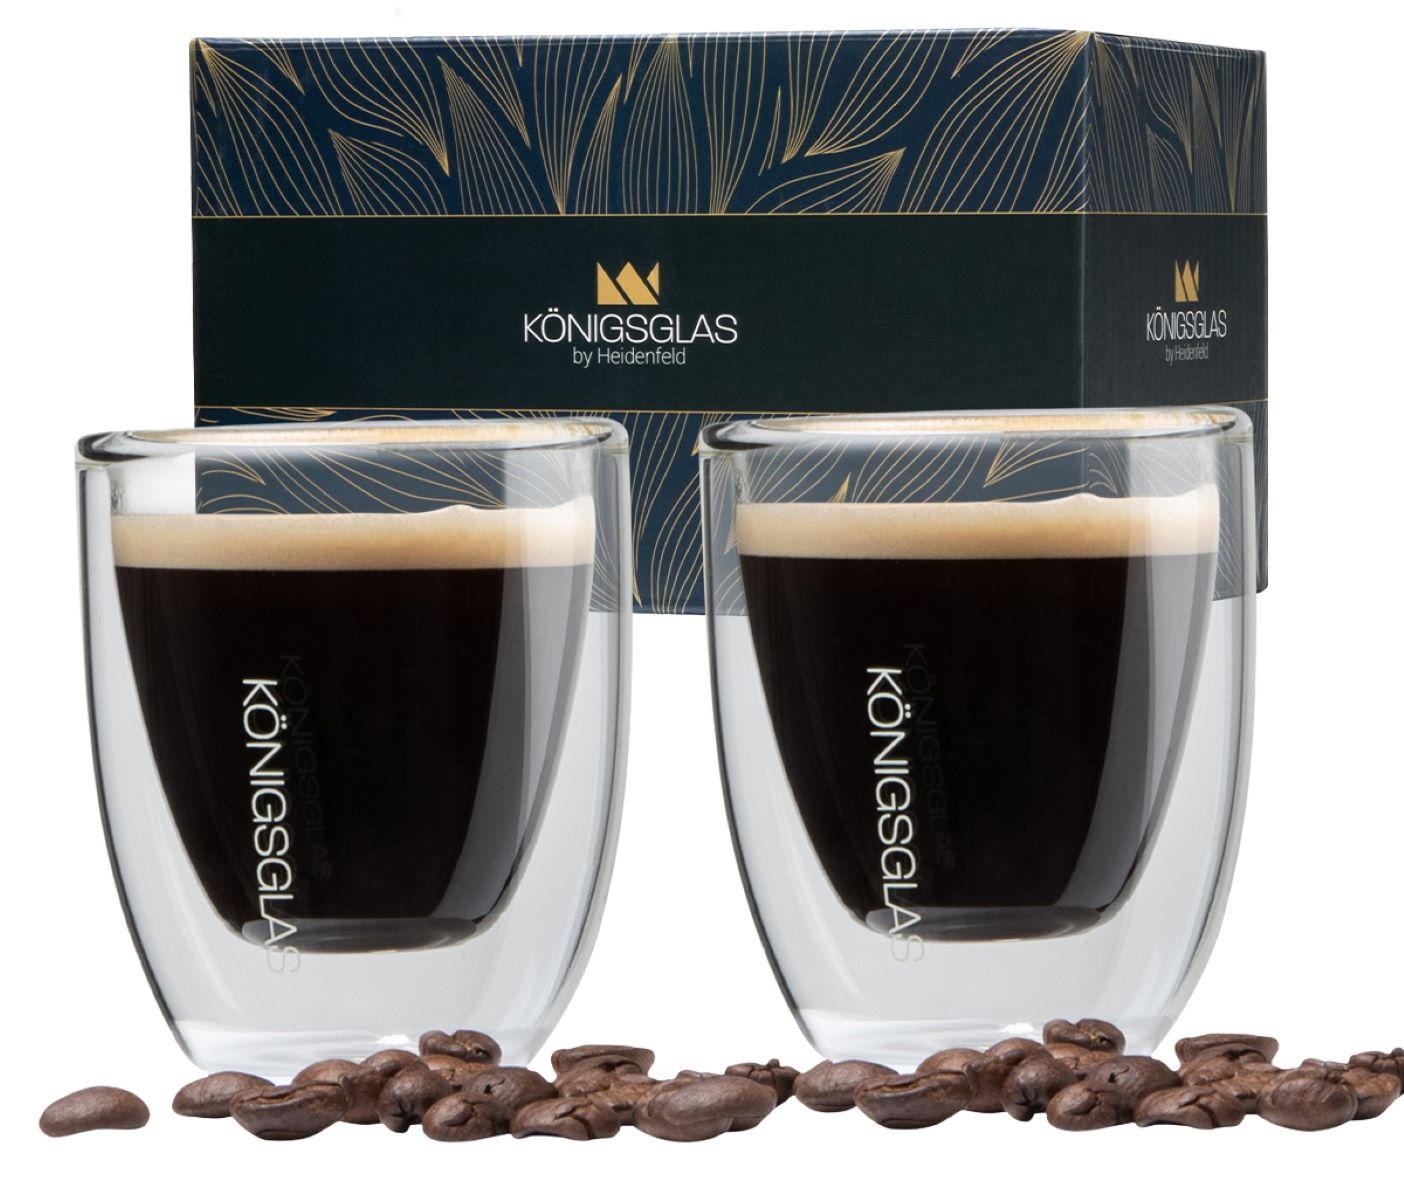 HEIDENFELD Königsglas Kaffeegläser ml 4x 80 Espresso